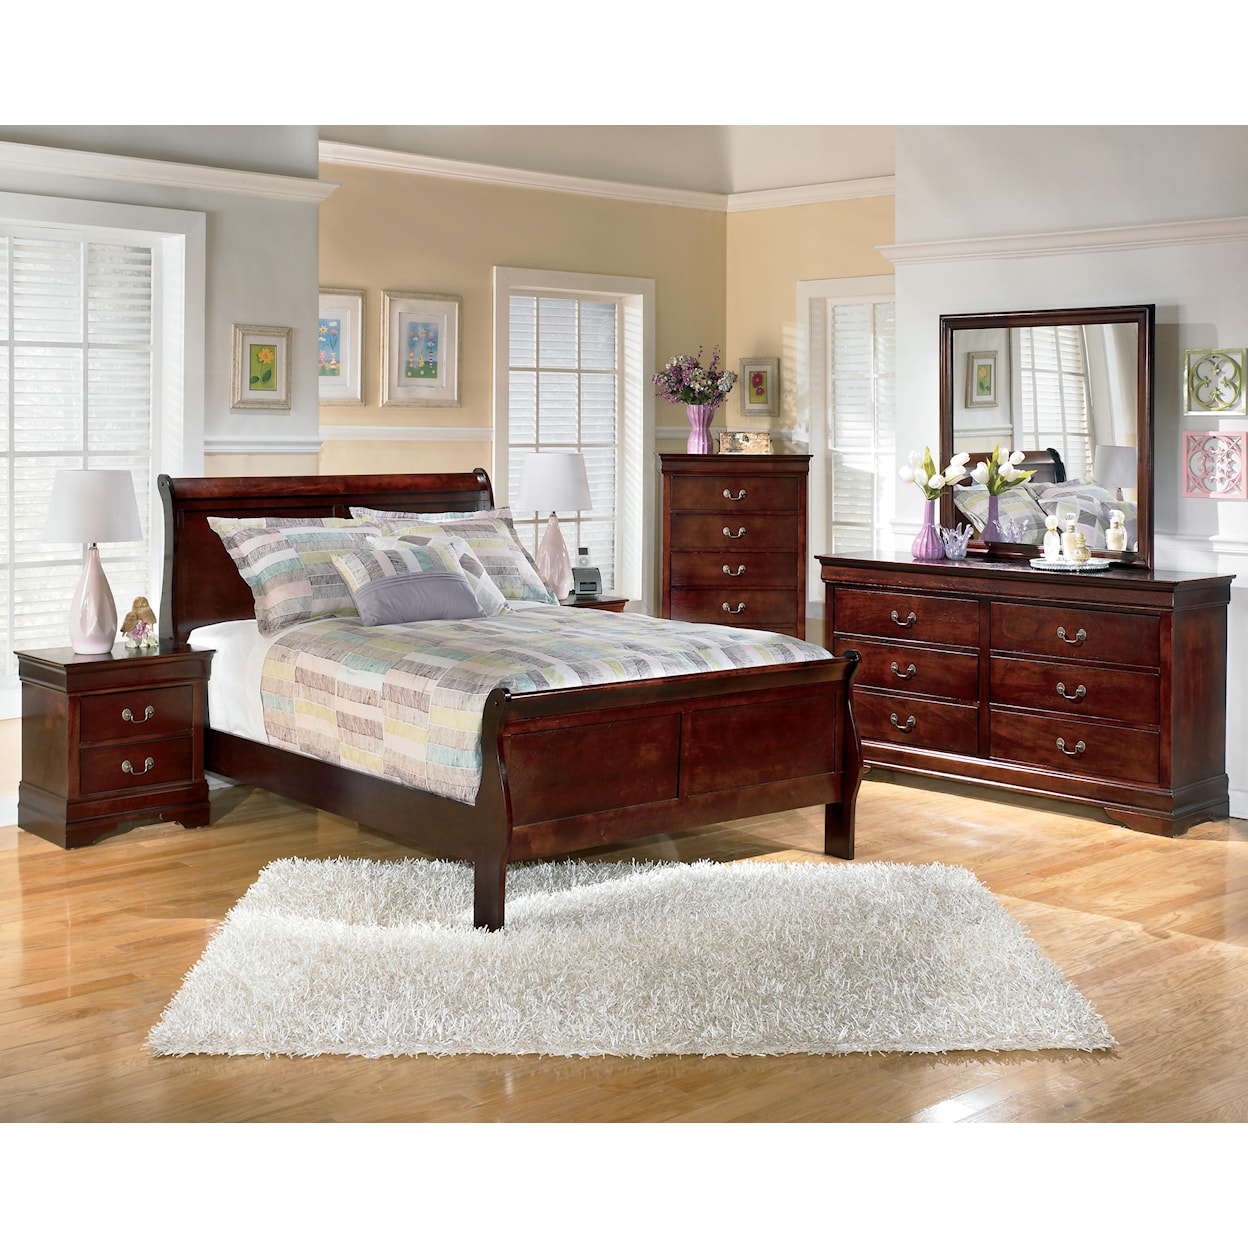 Ashley Furniture Signature Design Alisdair 3 Piece Full Bedroom Group